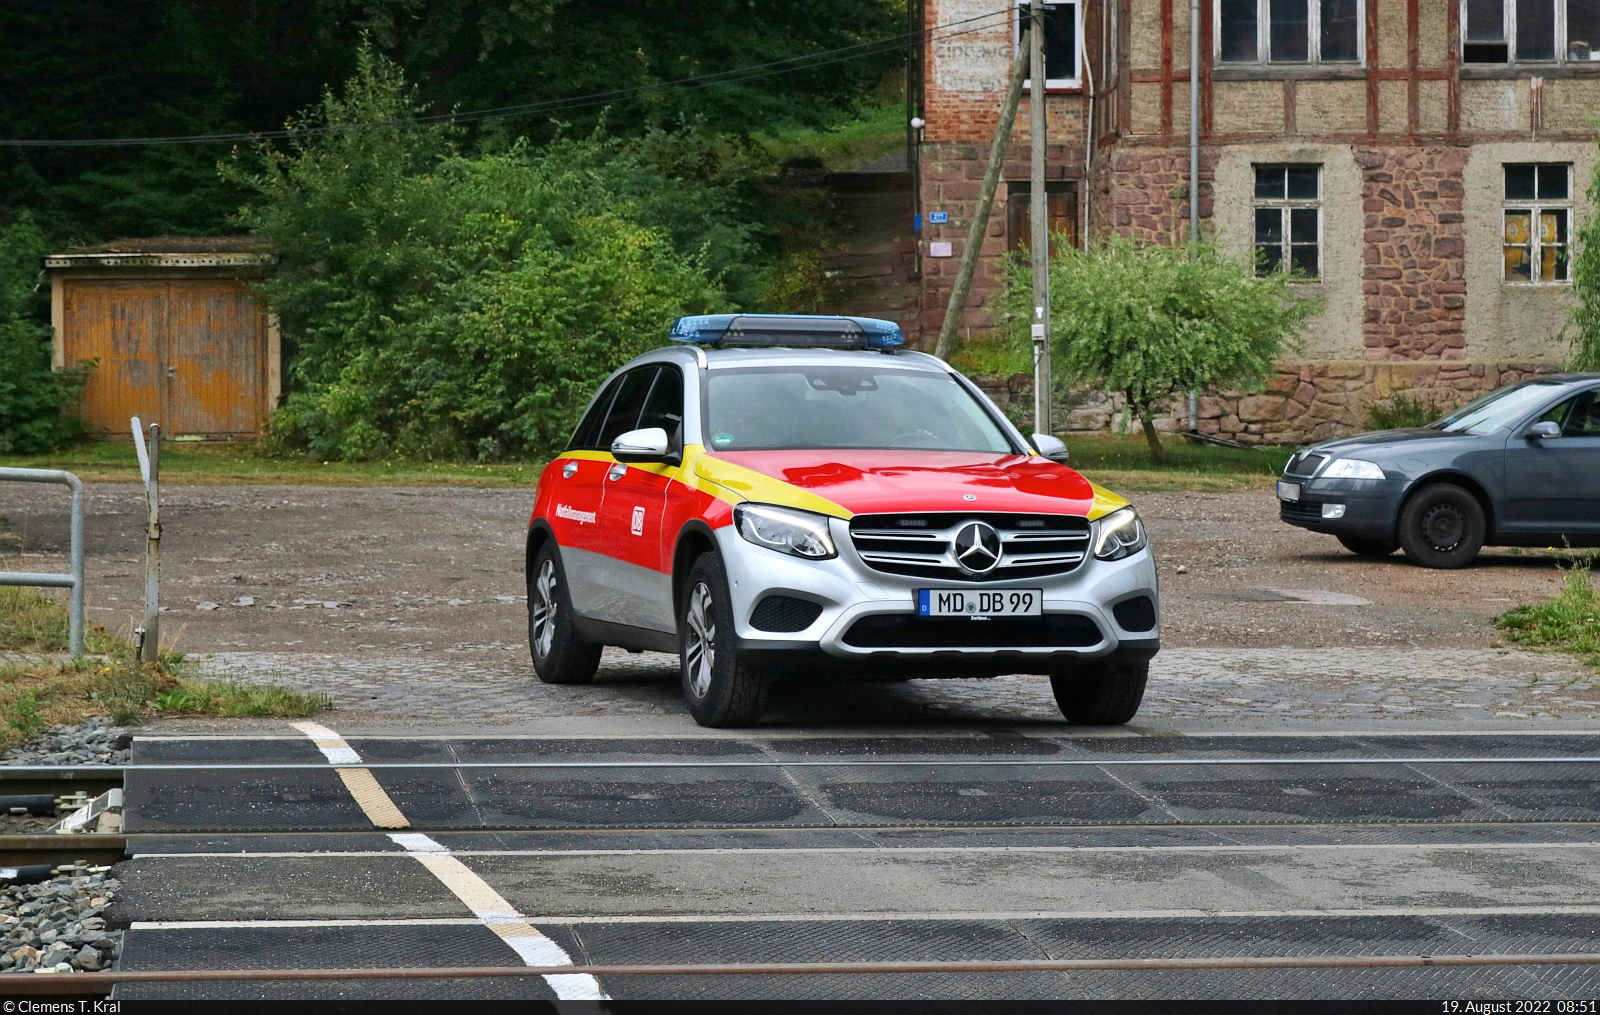 Vom Stellwerk kommend, befährt Mercedes-Benz GLC 4matic (MD-DB-99) den Bahnübergang im Bahnhof Blankenheim(Sangerhausen).

🧰 DB Notfallmanagement
🕓 19.8.2022 | 8:51 Uhr